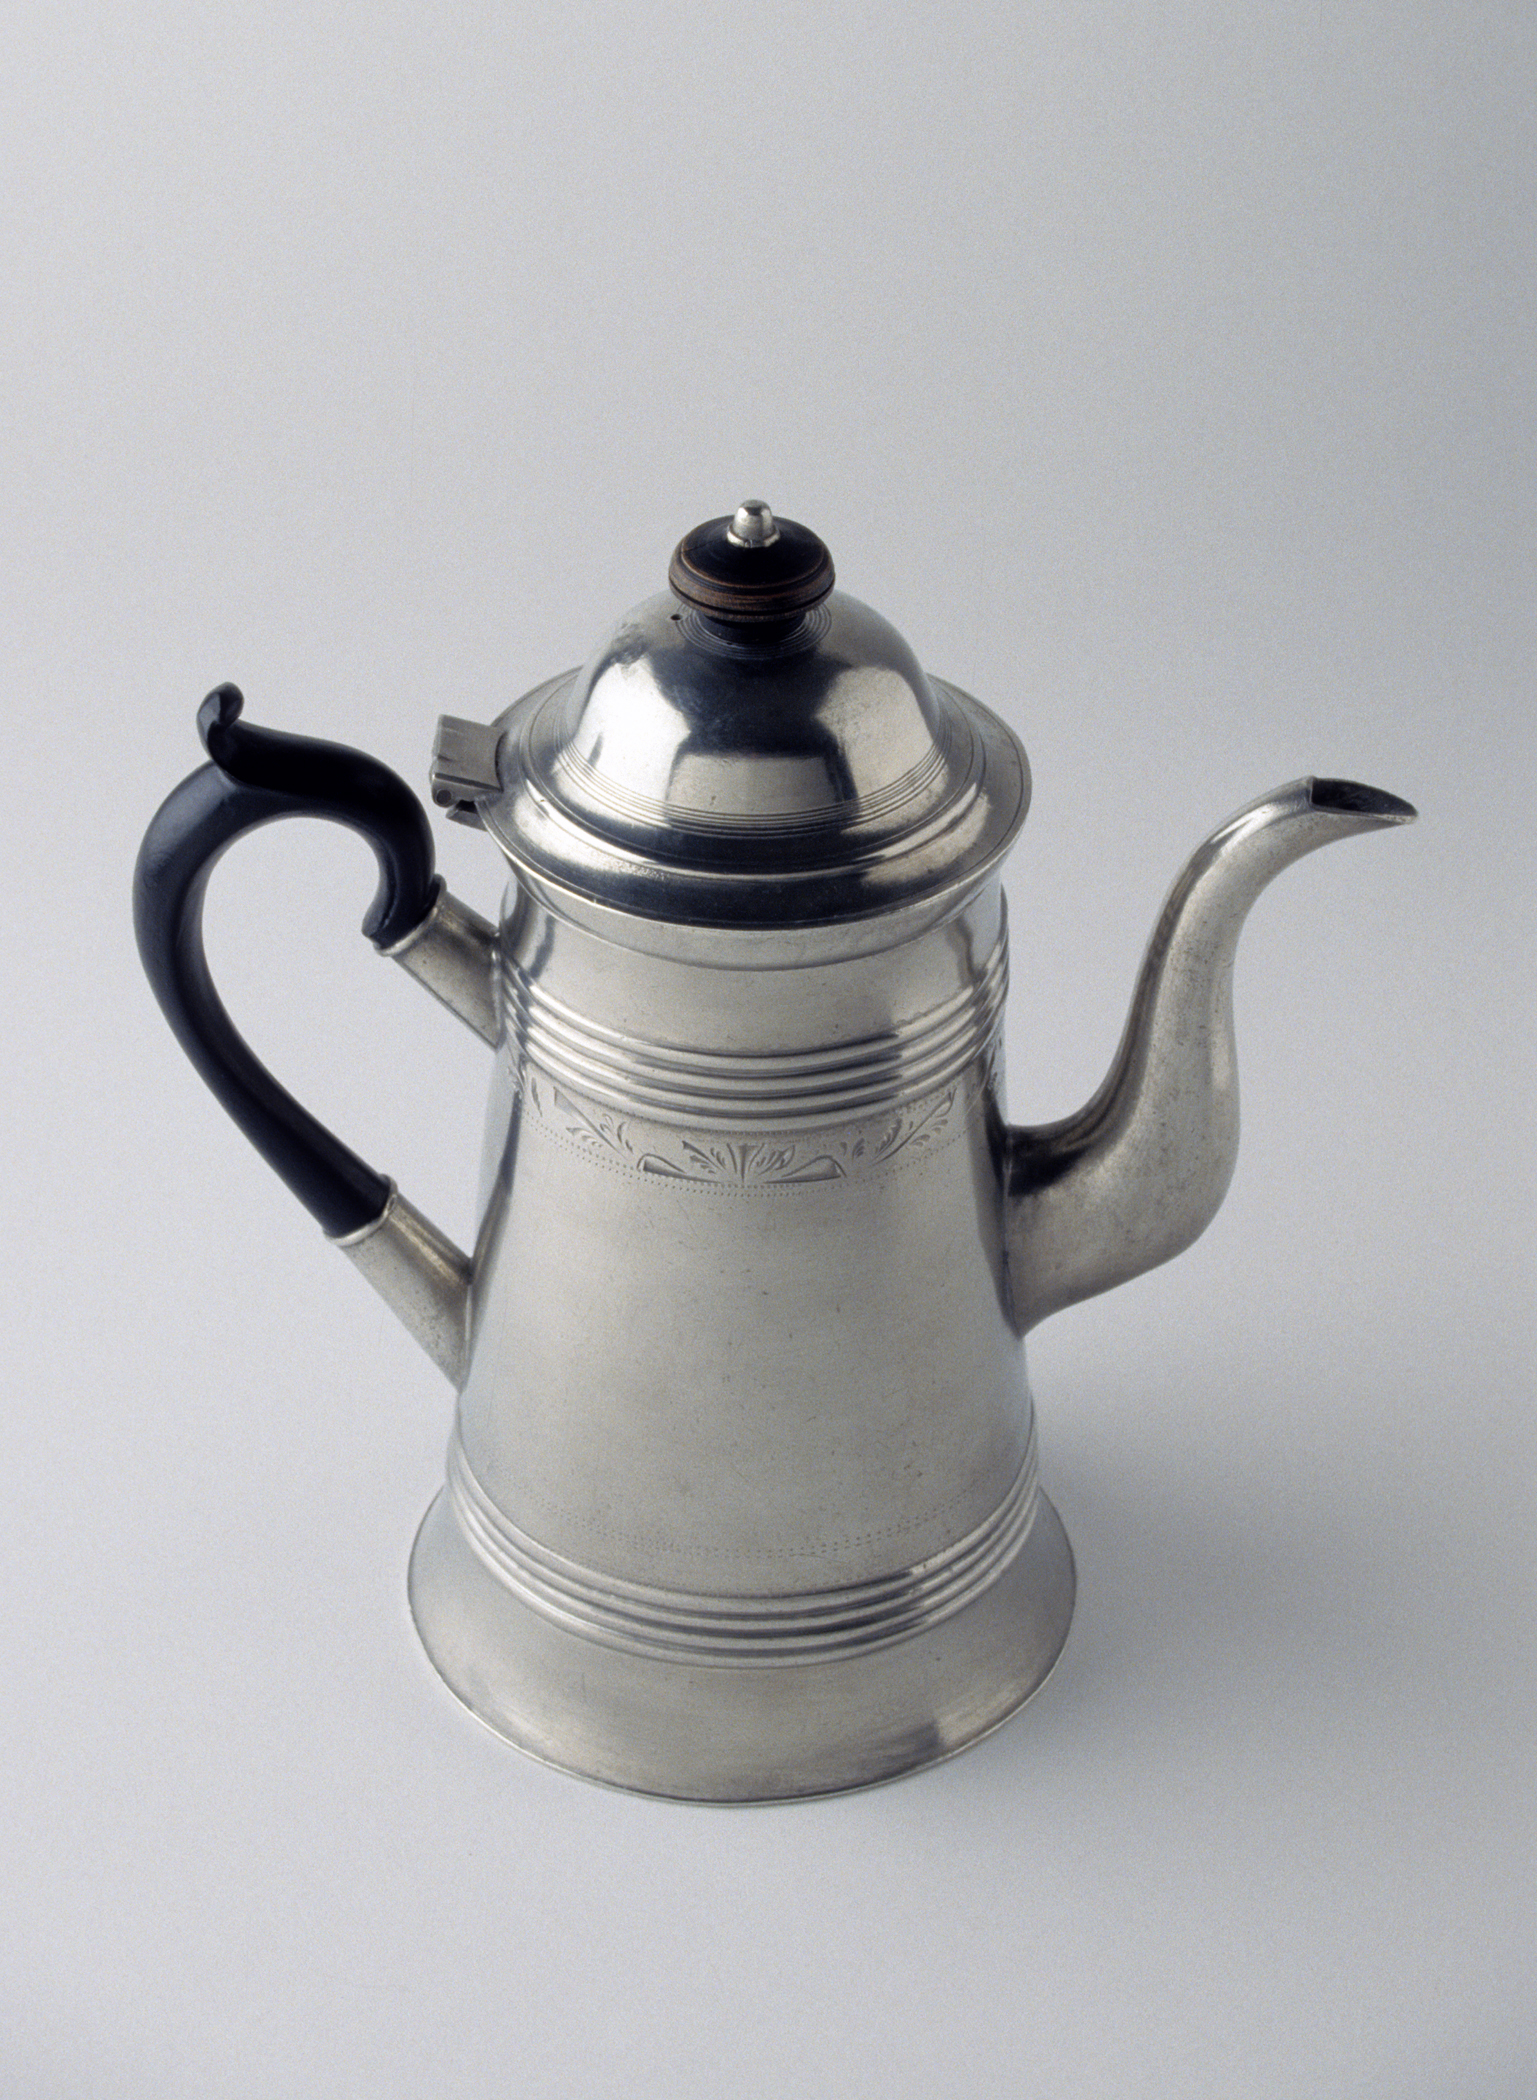 2000.0033 Pewter teapot